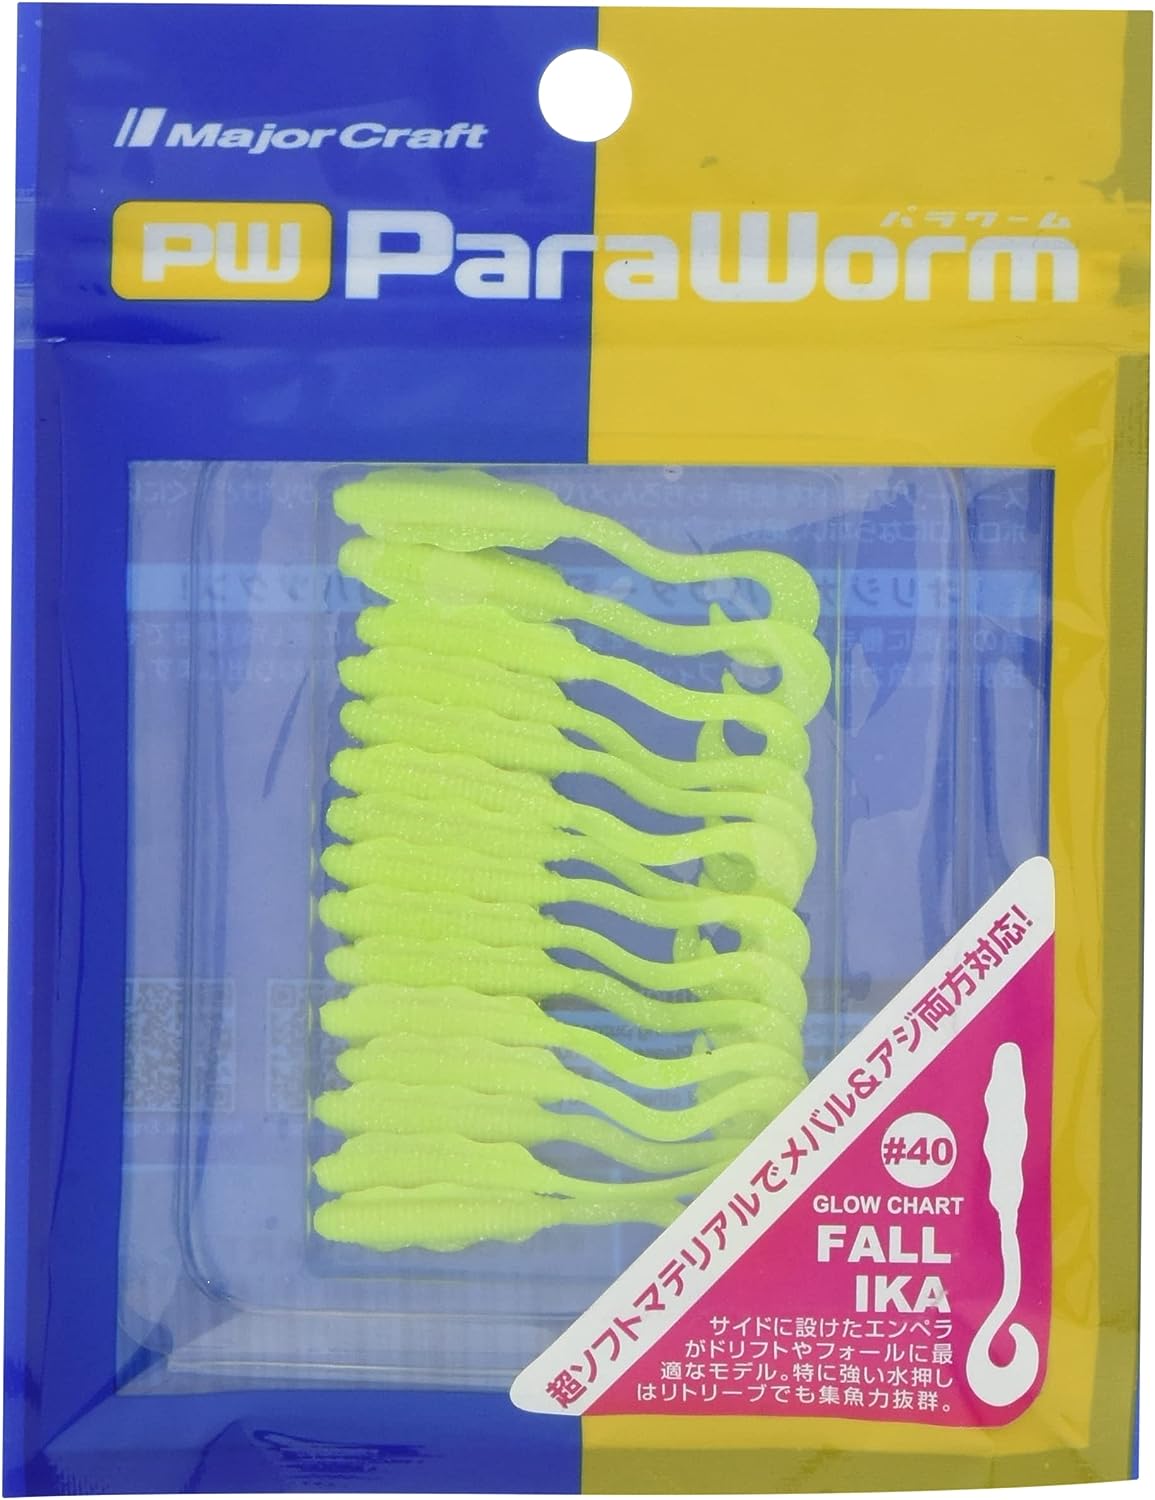 Major Craft Paraworm Fall Ika Lures